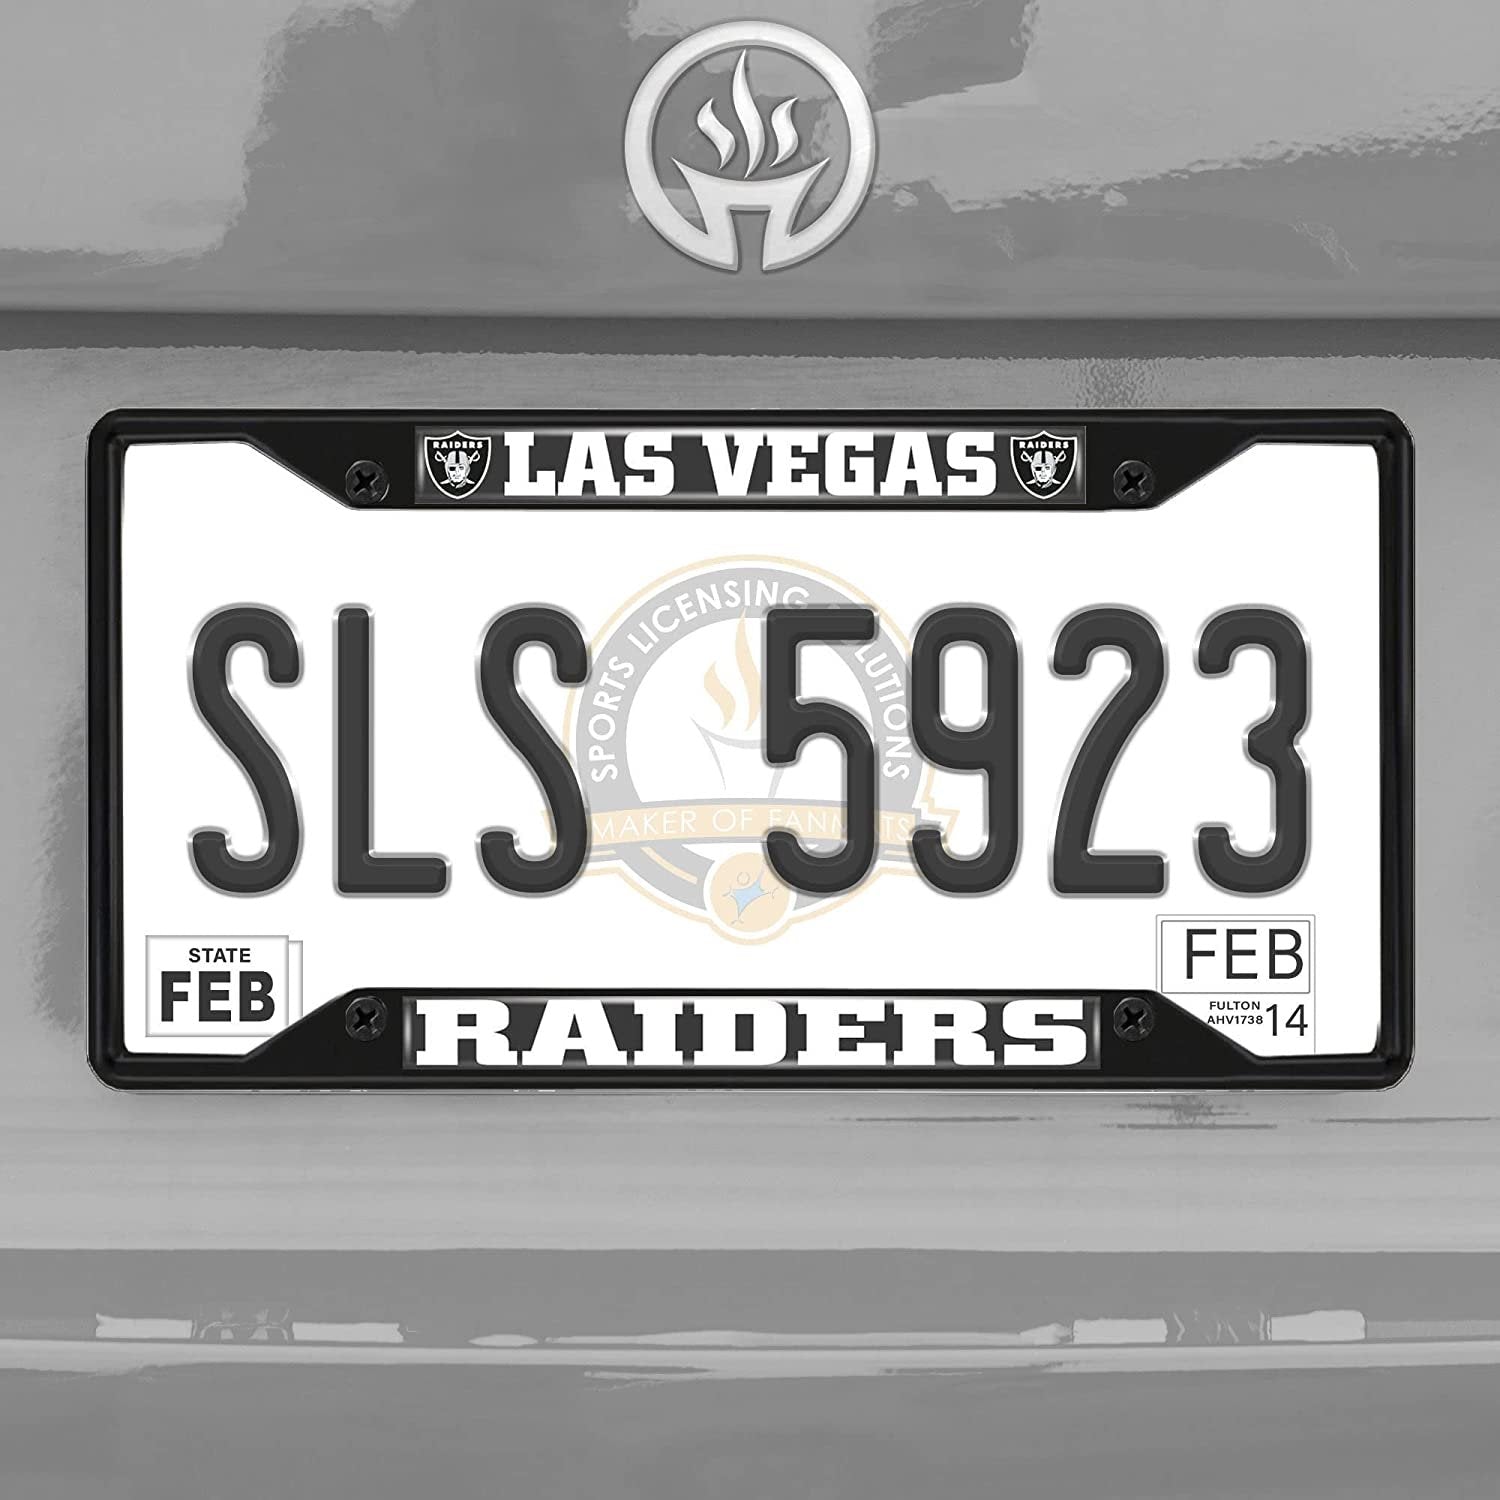 Las Vegas Raiders Black Metal License Plate Frame Tag Cover, 6x12 Inch